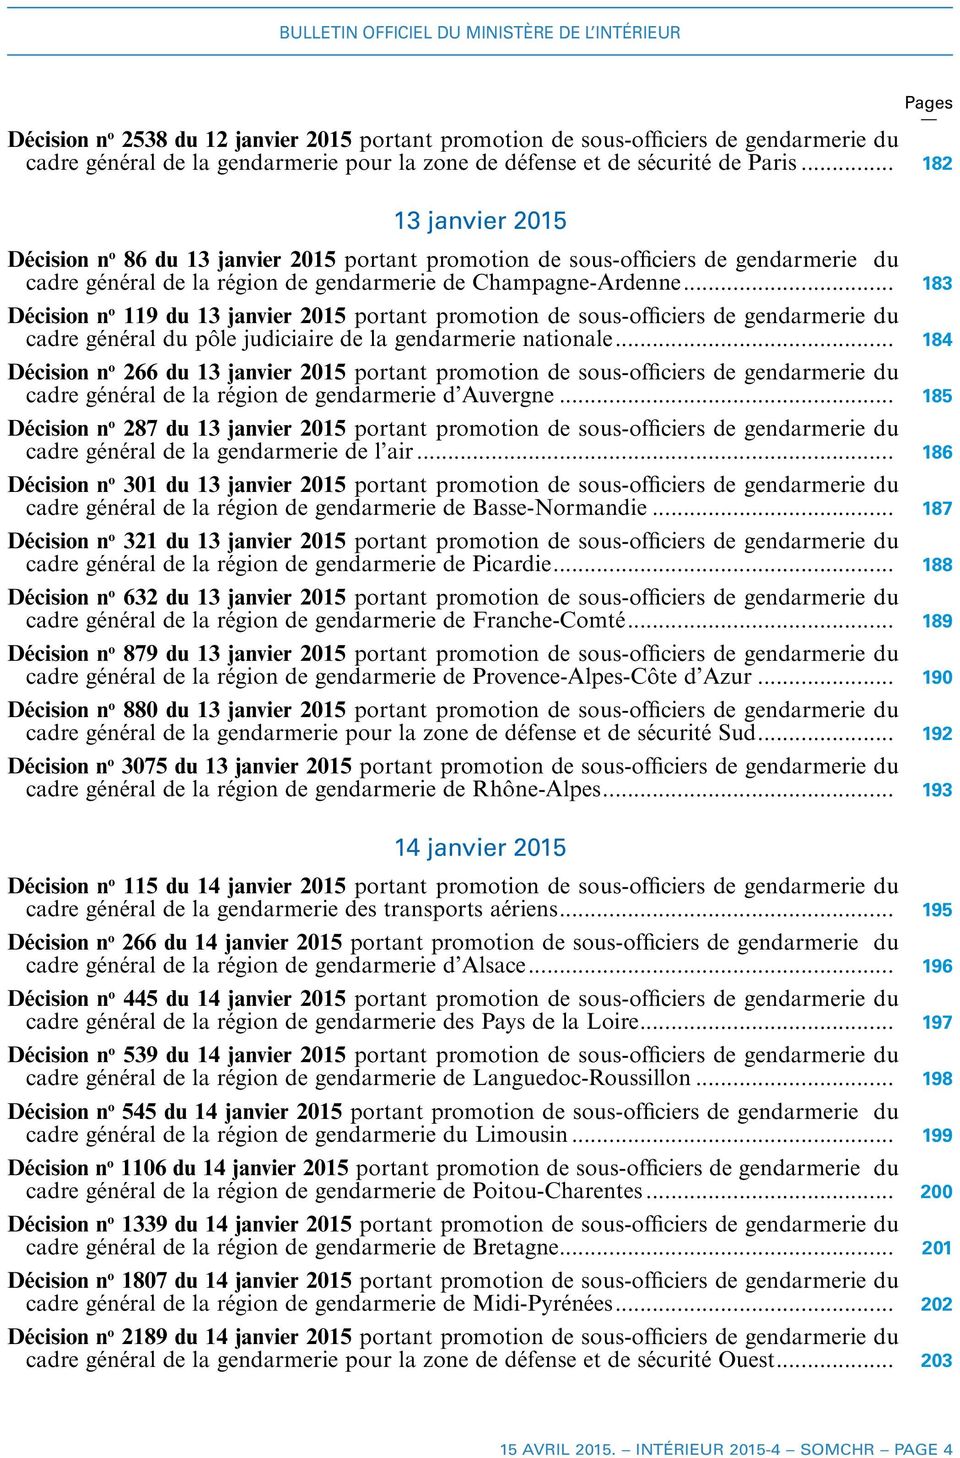 .. 183 Décision n o 119 du 13 janvier 2015 portant promotion de sous-officiers de gendarmerie du cadre général du pôle judiciaire de la gendarmerie nationale.